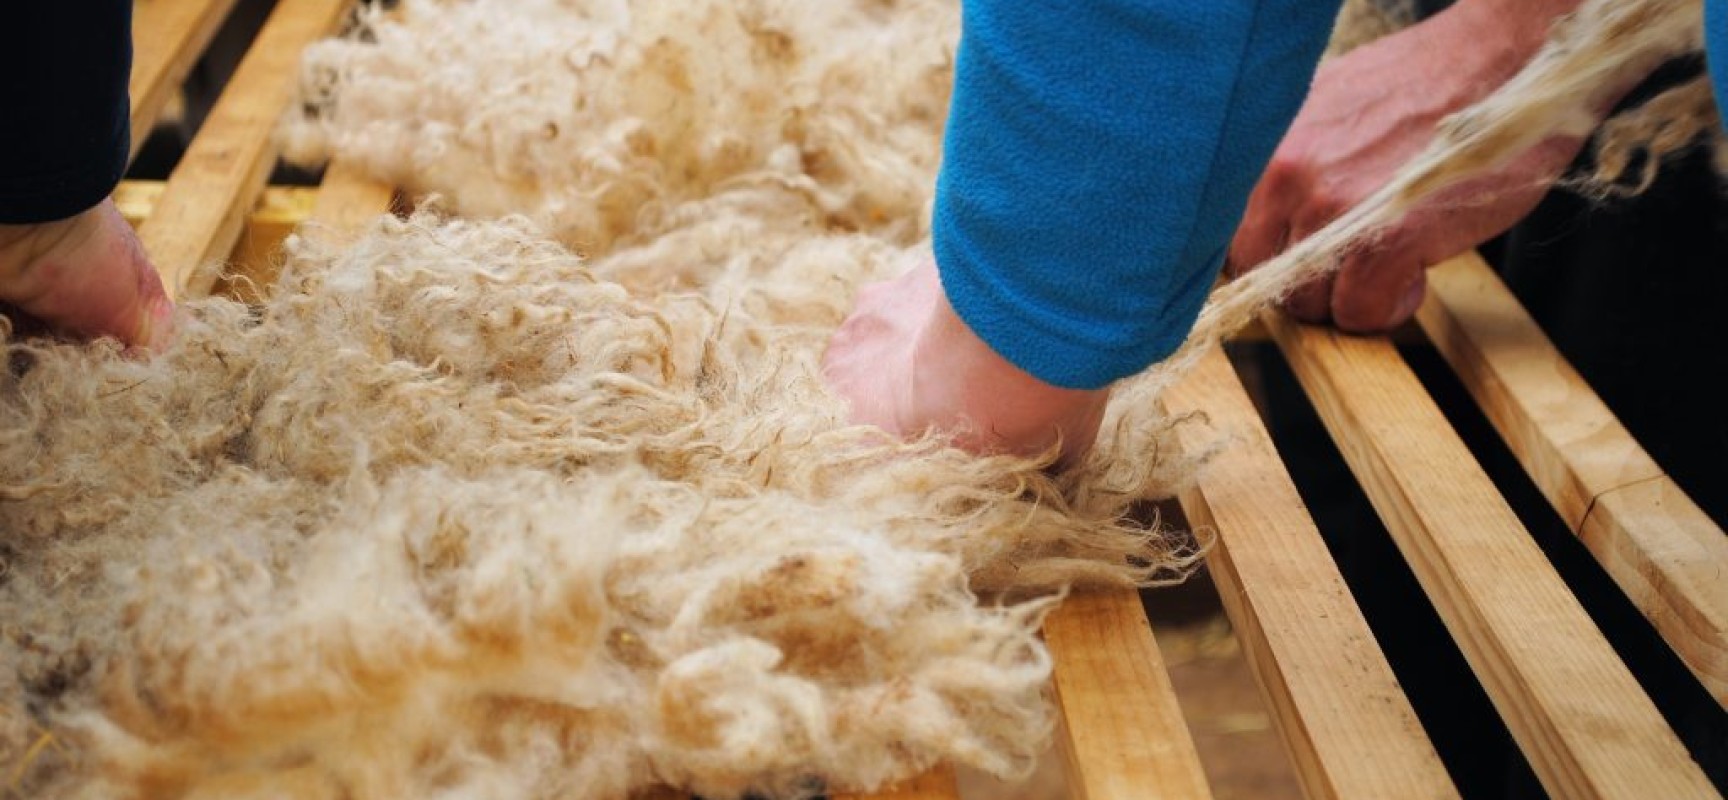 FORMATION – Préparation, transformation et commercialisation de la laine #Lainamac